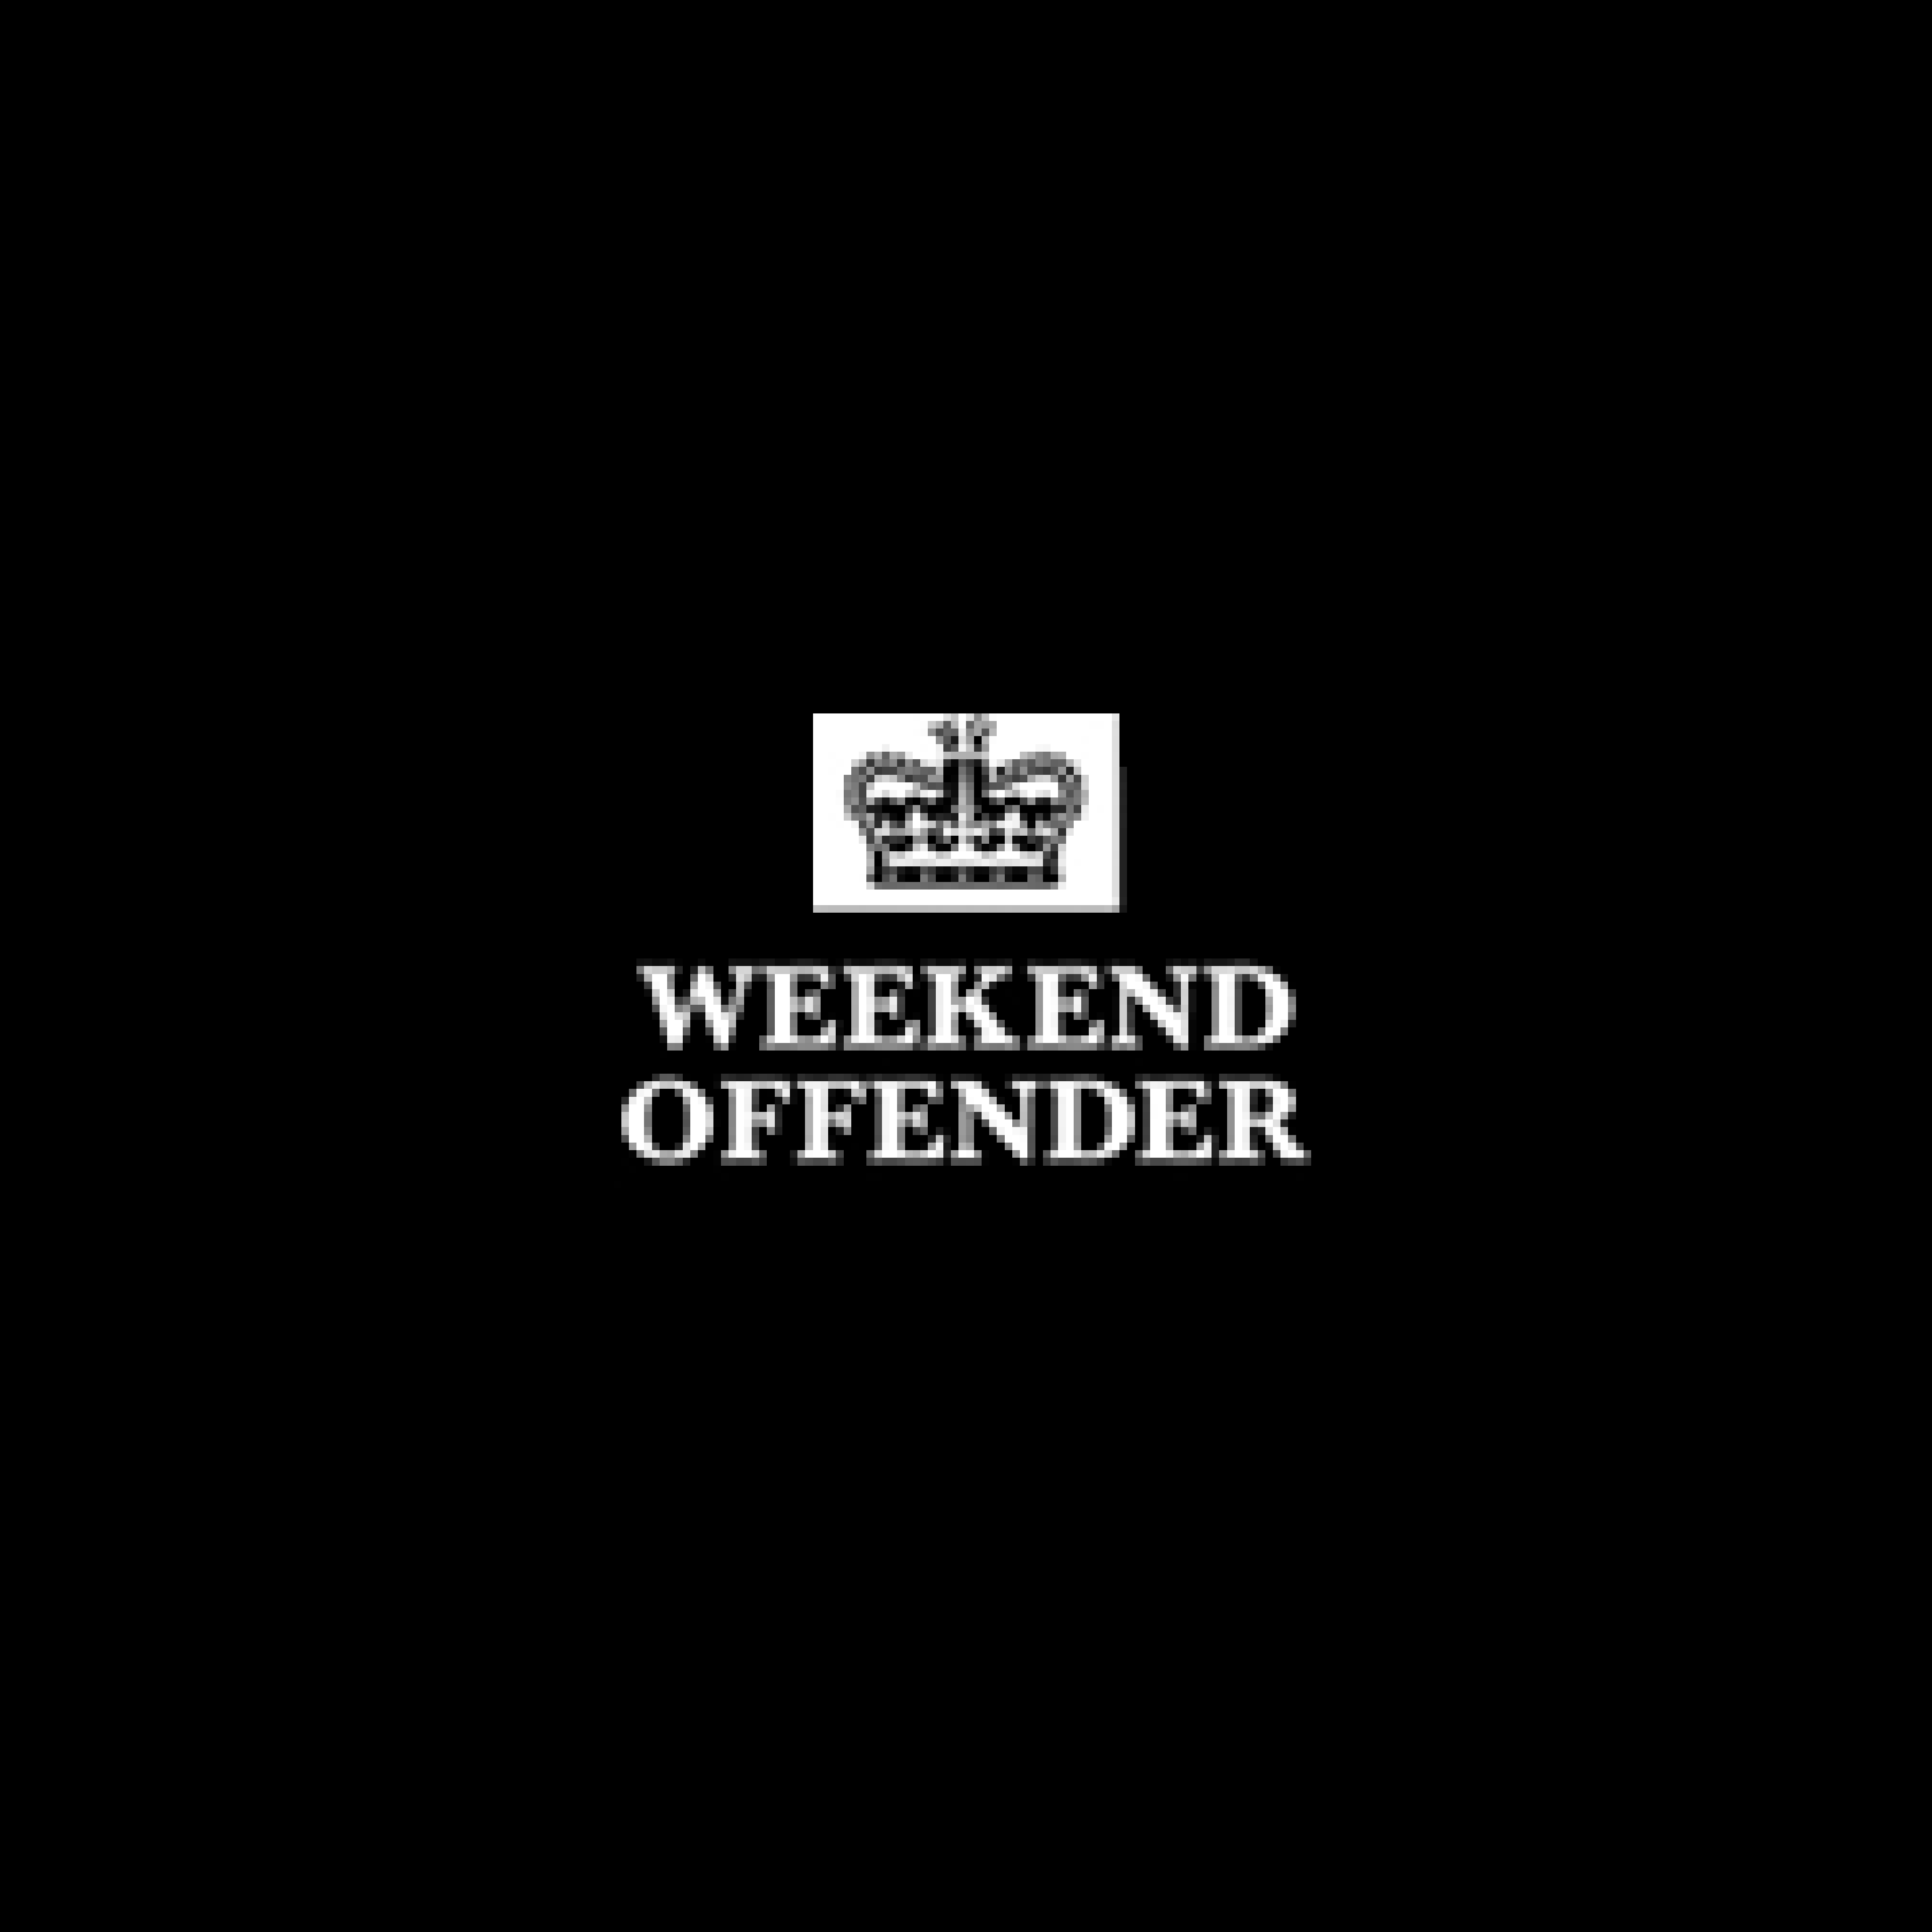  Weekend Offender 